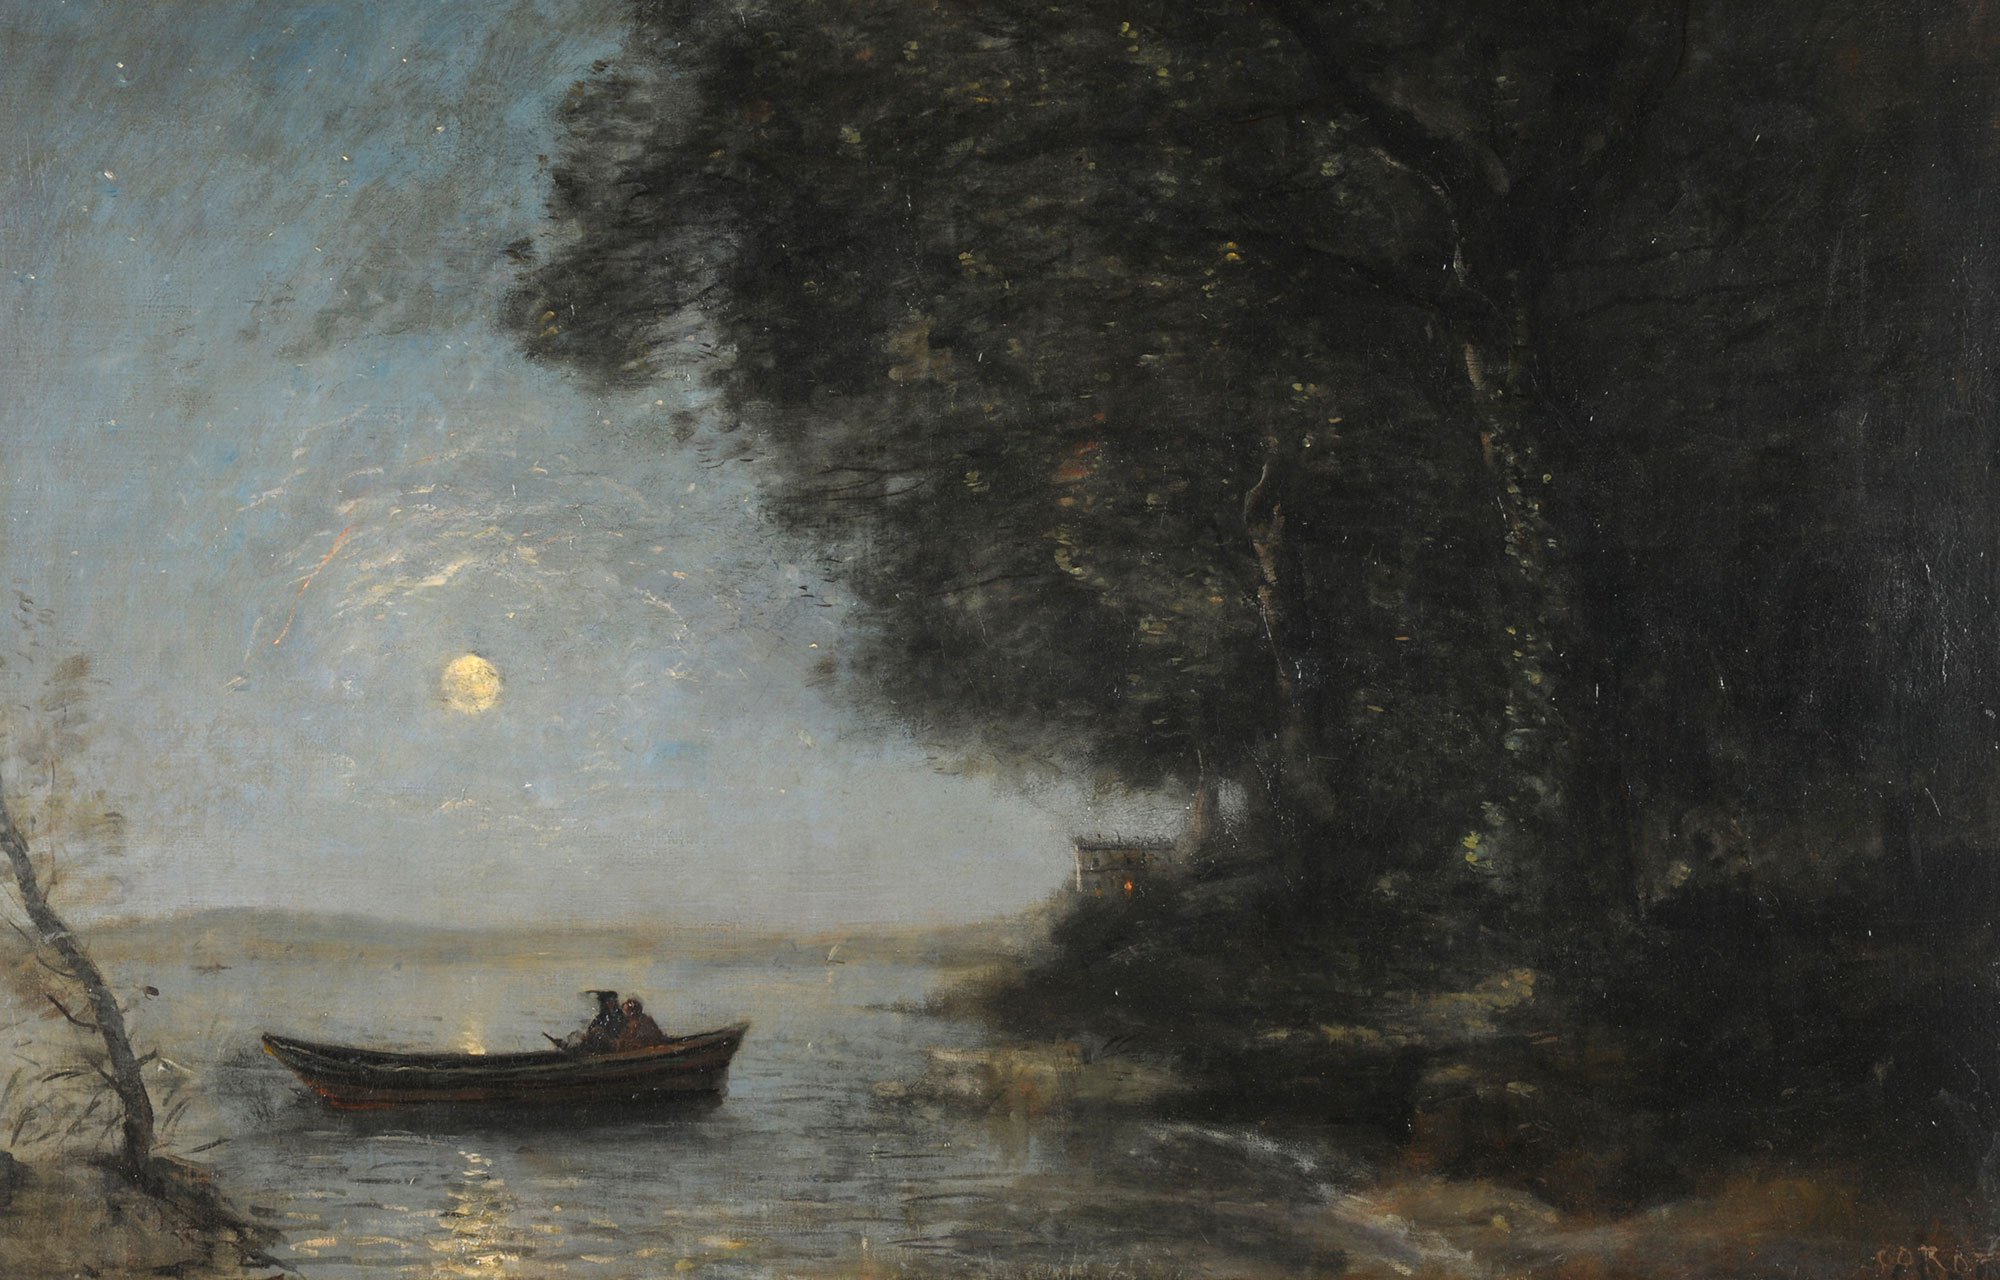 Szene an einem nächtlichem See: Rechts sieht man das dunkel Ufer mit Bäumen. In der Mitte ein kleines Bott mit zwei Fischern. Im Hintergrund sieht man den Vollmond.